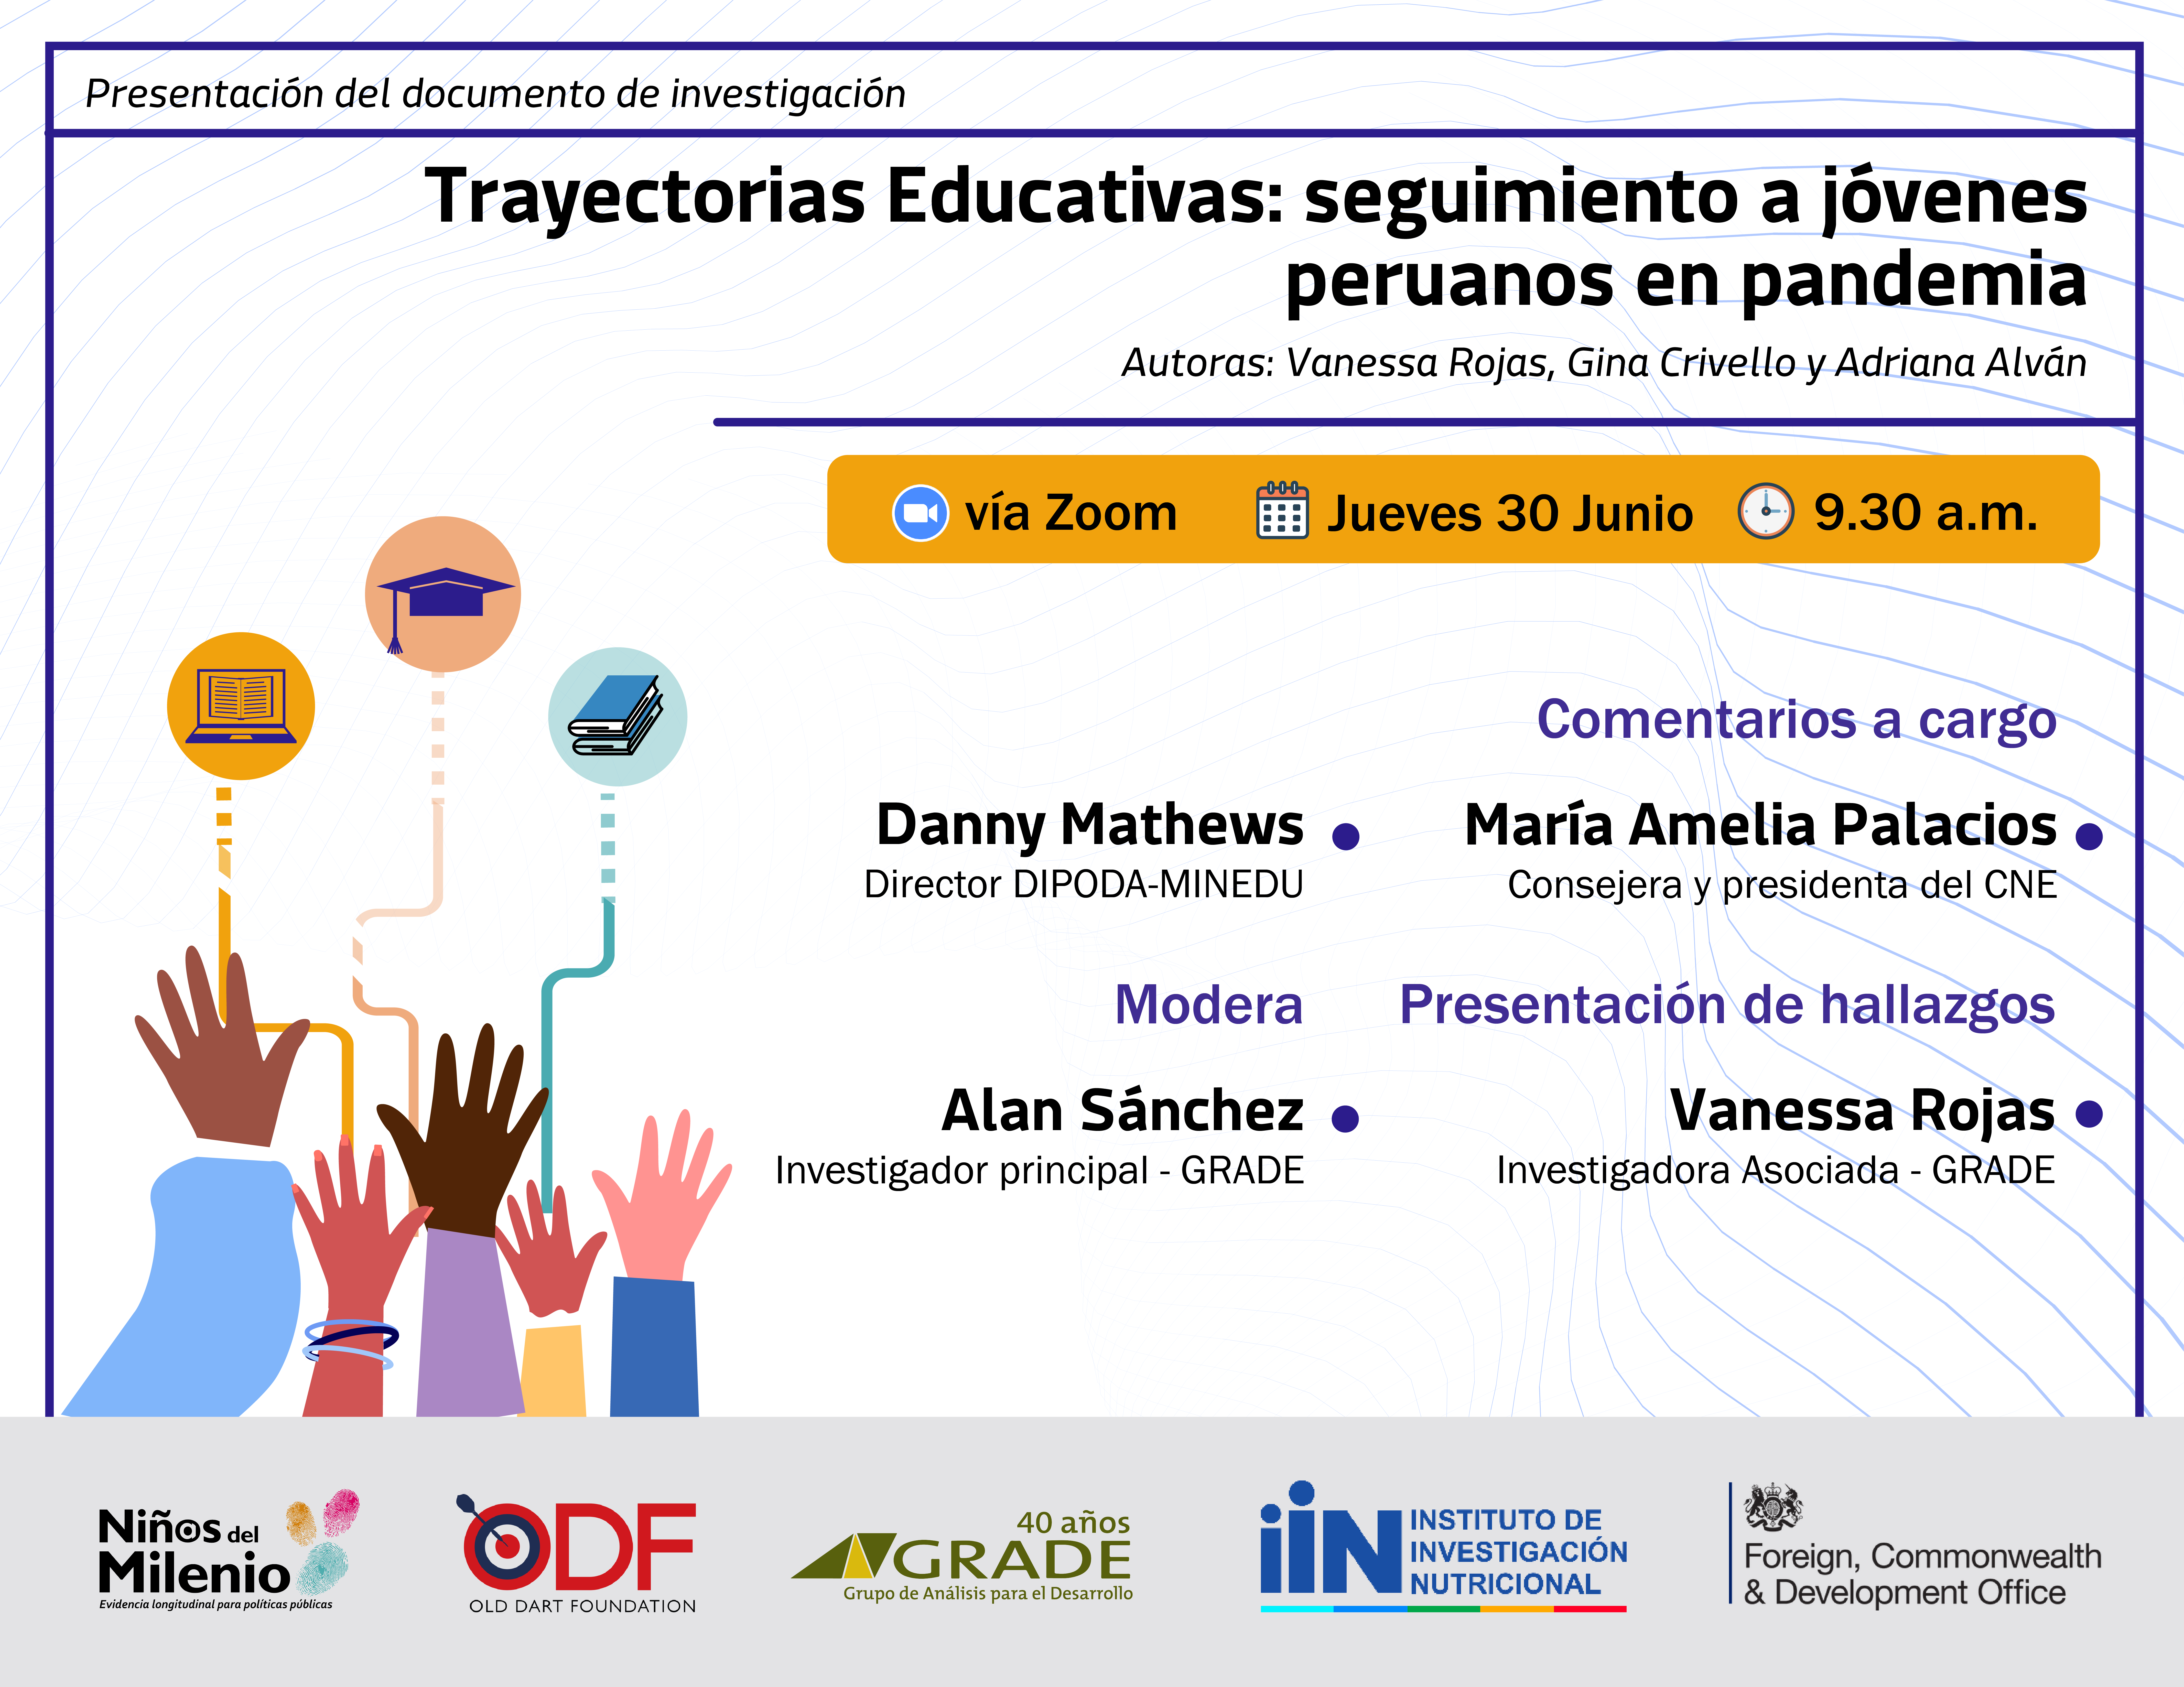 “Trayectorias Educativas: seguimiento a jóvenes peruanos en pandemia”